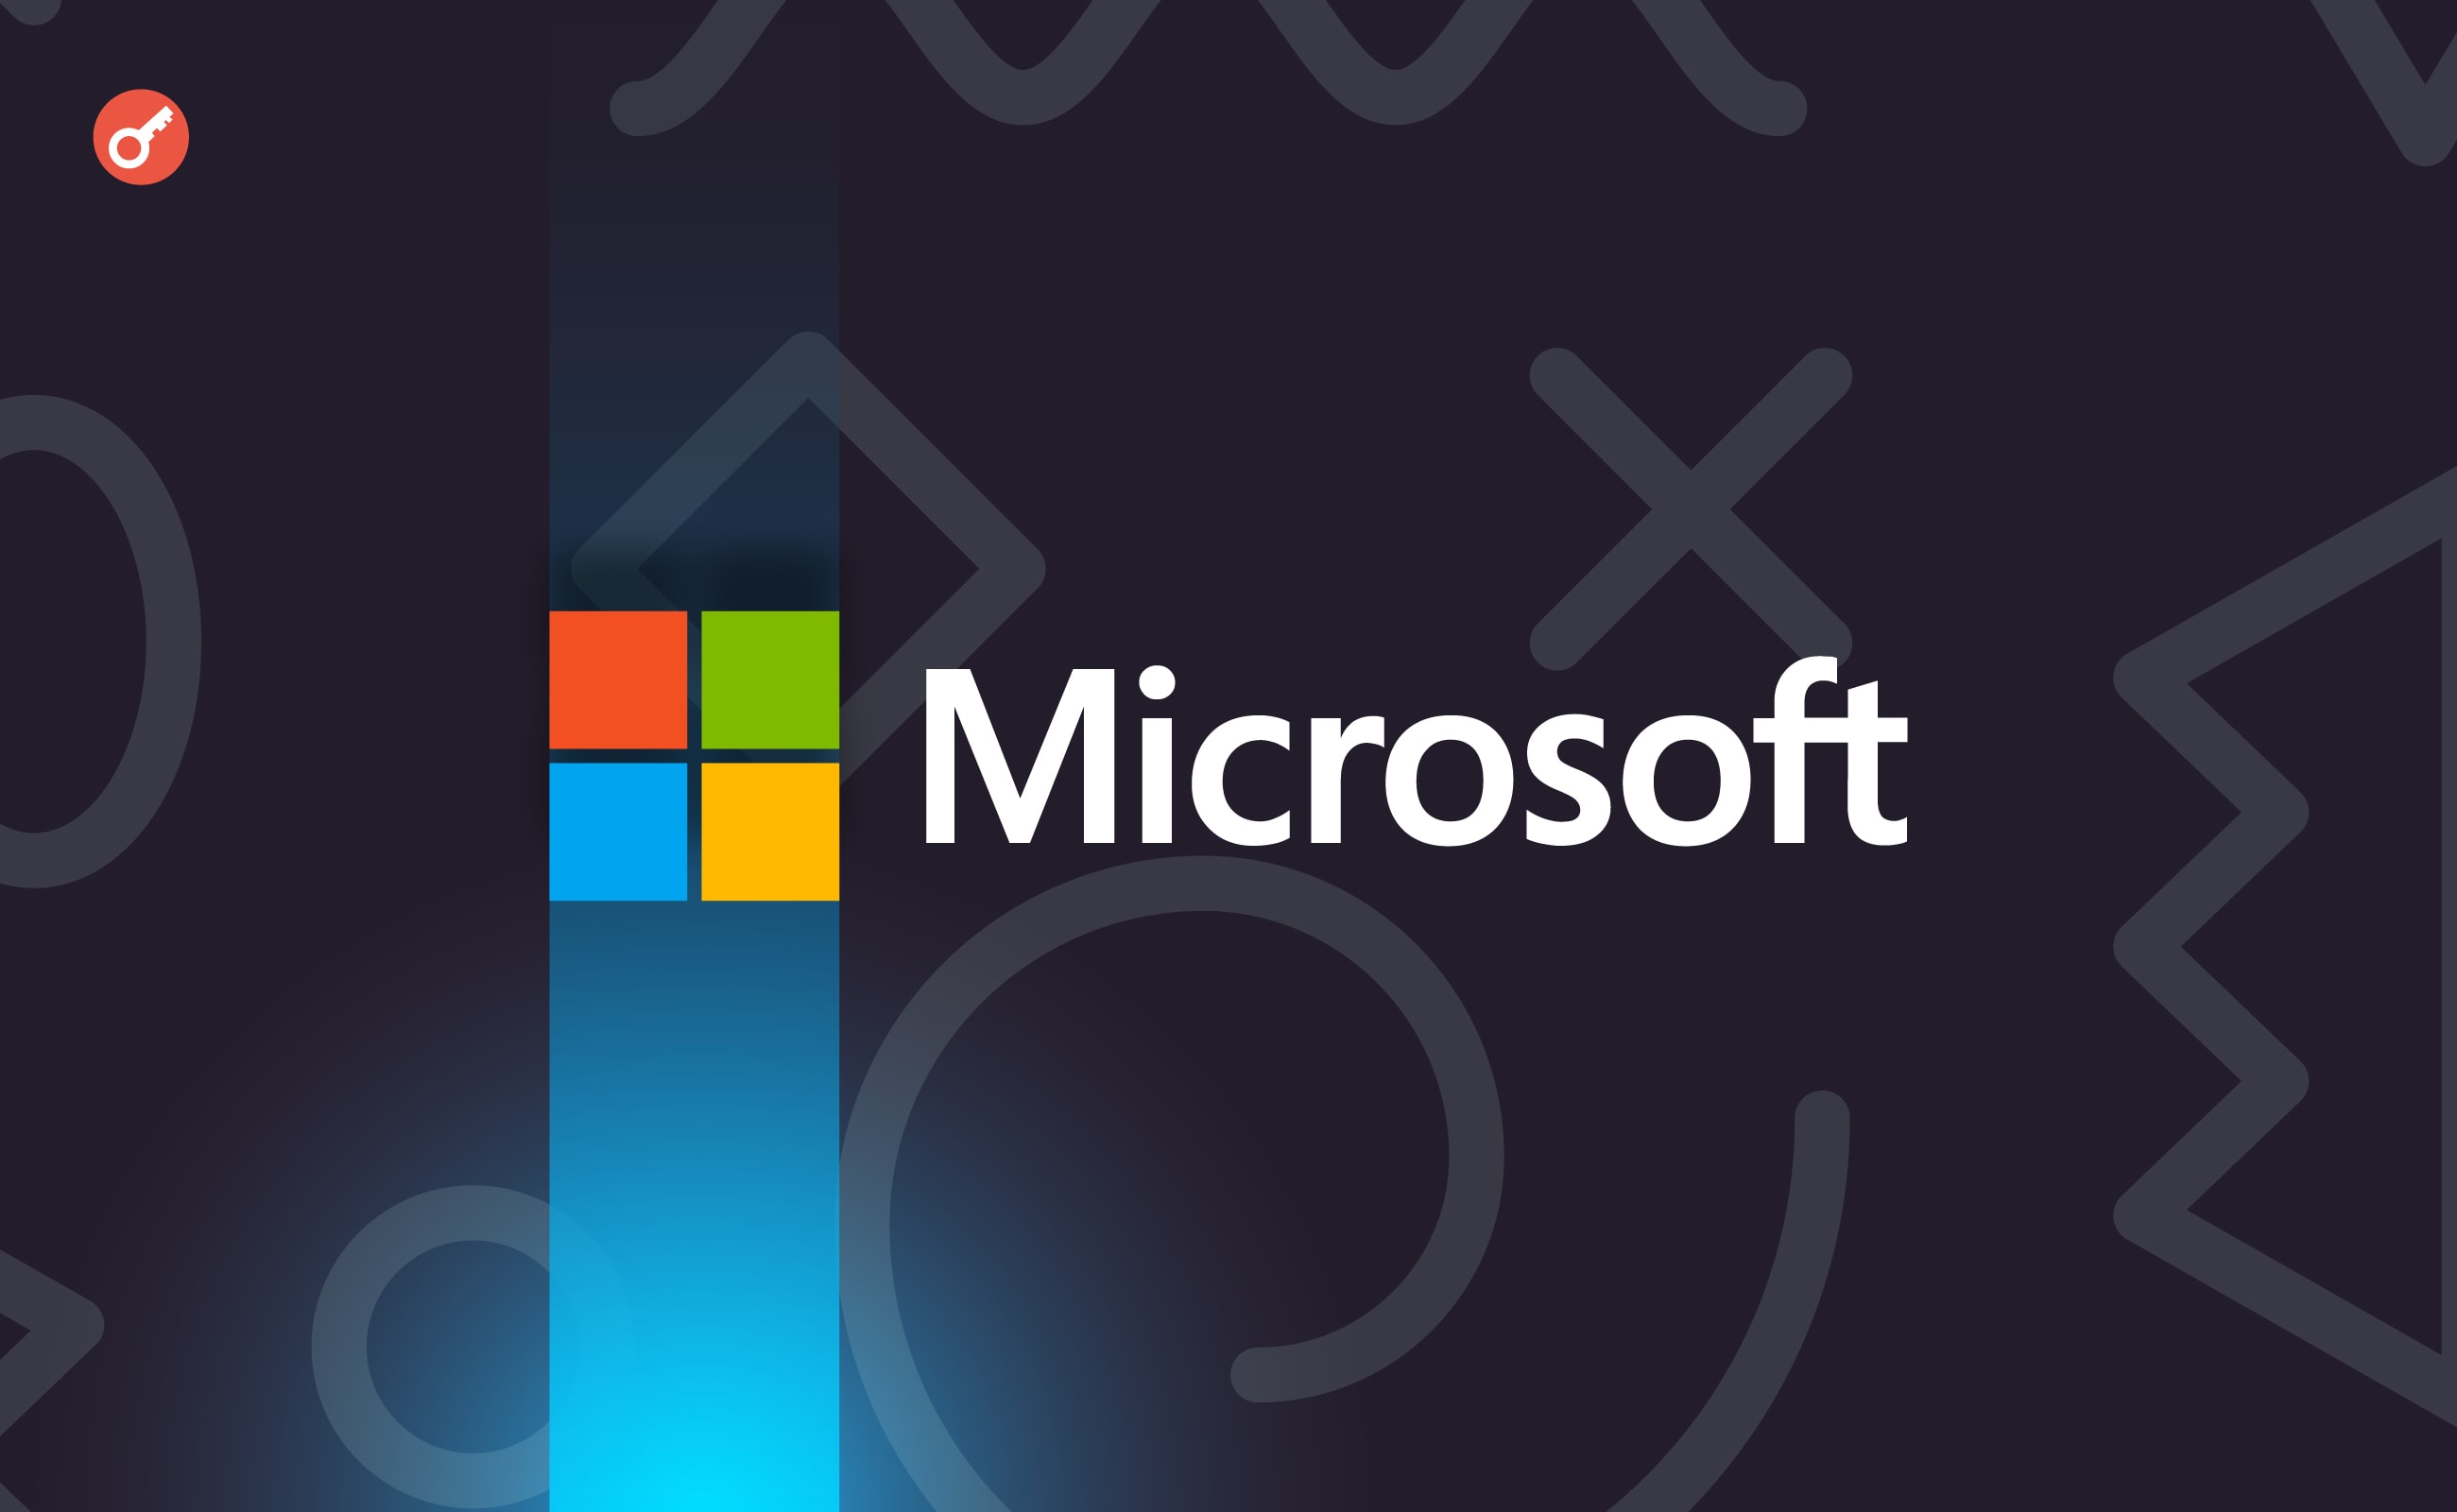 ПК Copilot+, Windows 11 на Arm и функции с ИИ: все важные анонсы Microsoft Surface